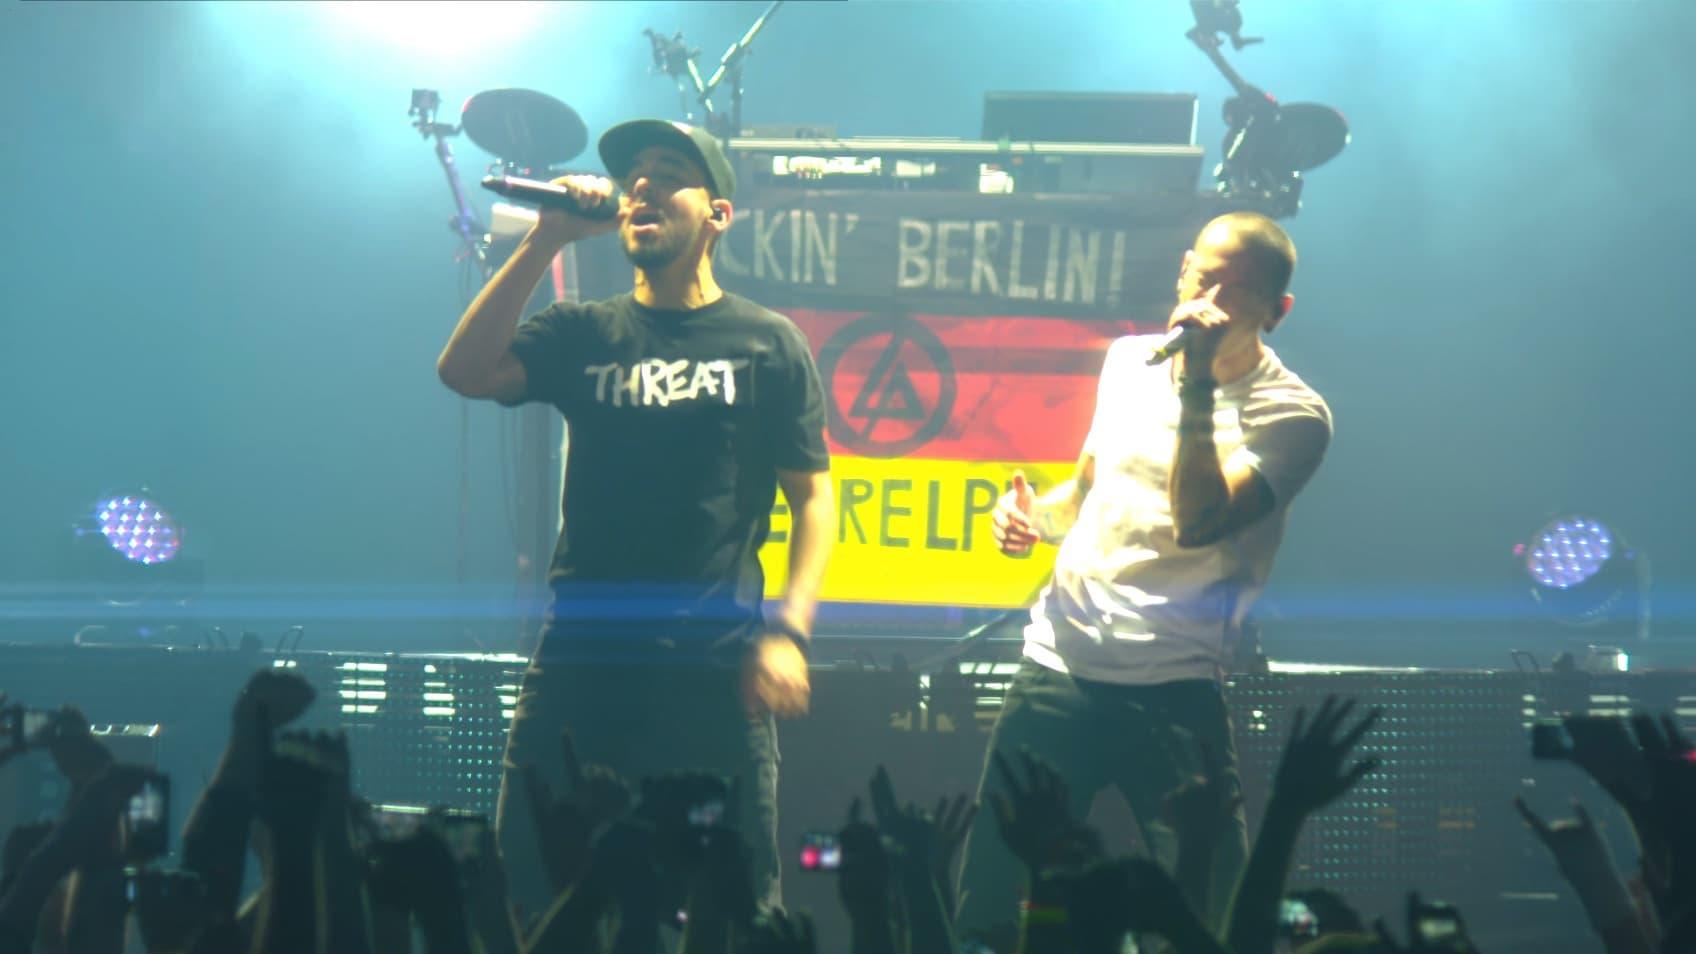 Linkin Park - Berlin, Germany, O2 World Arena backdrop